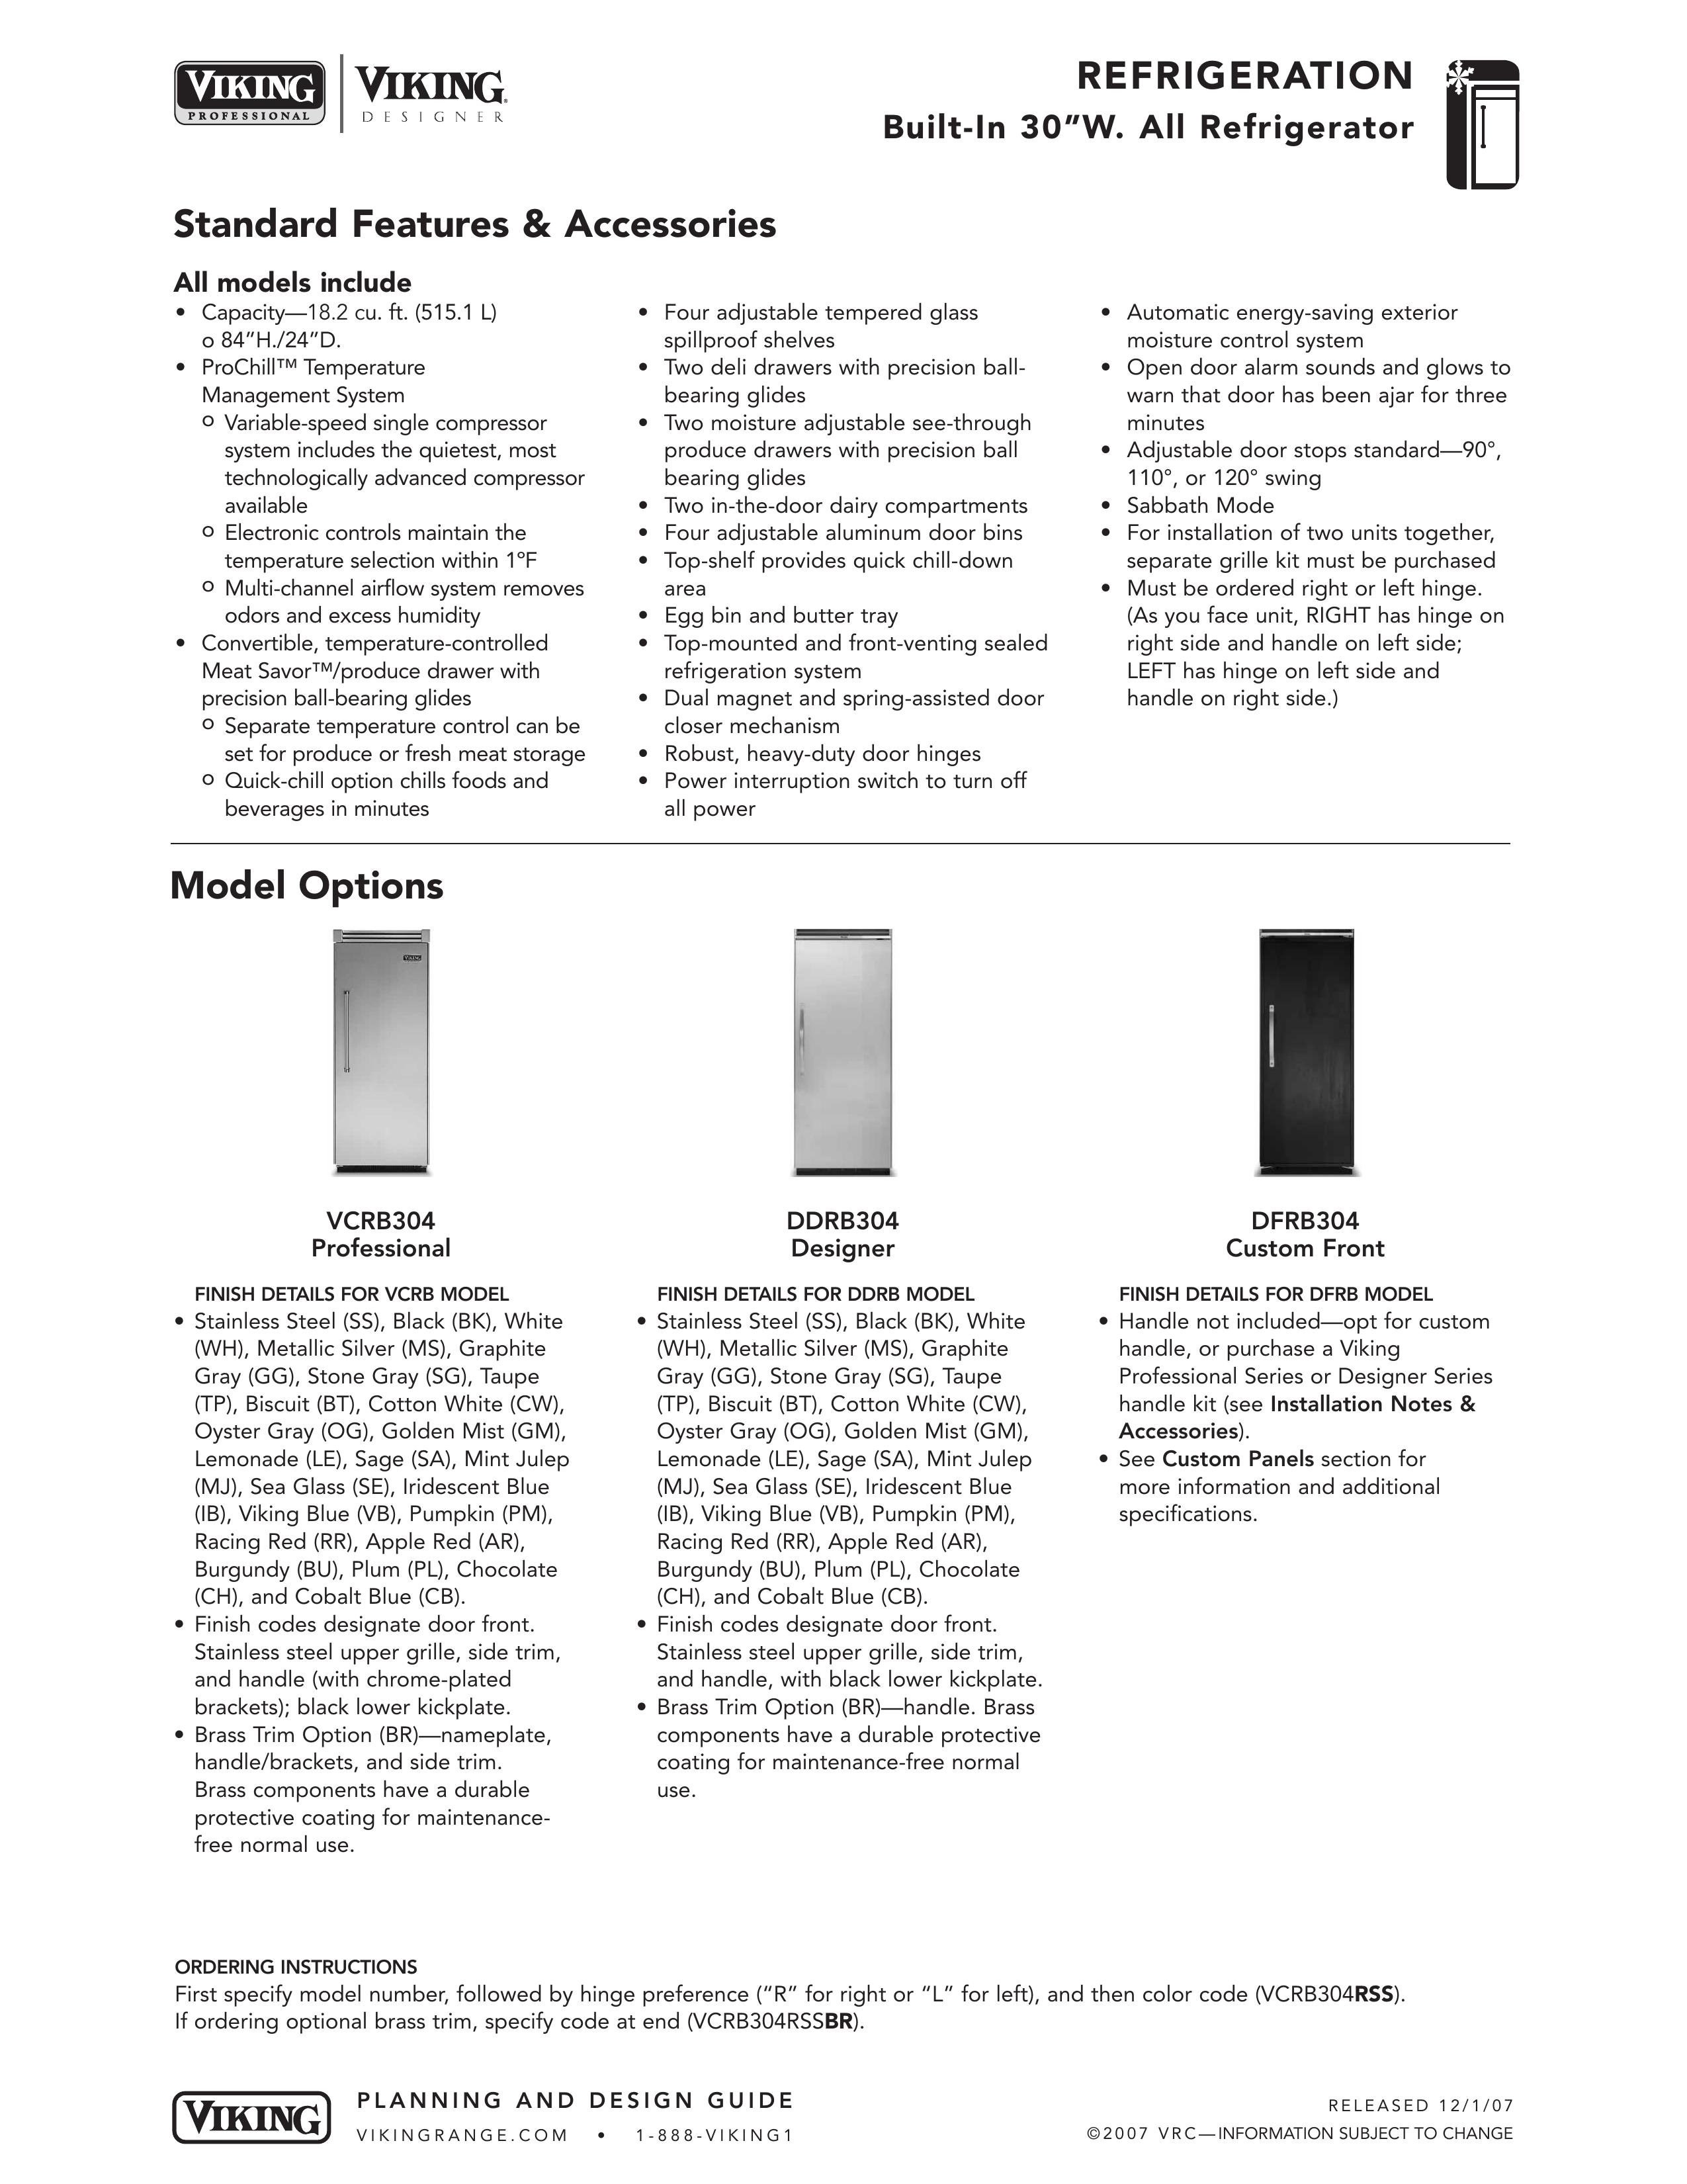 Viking DFRB304 Refrigerator User Manual